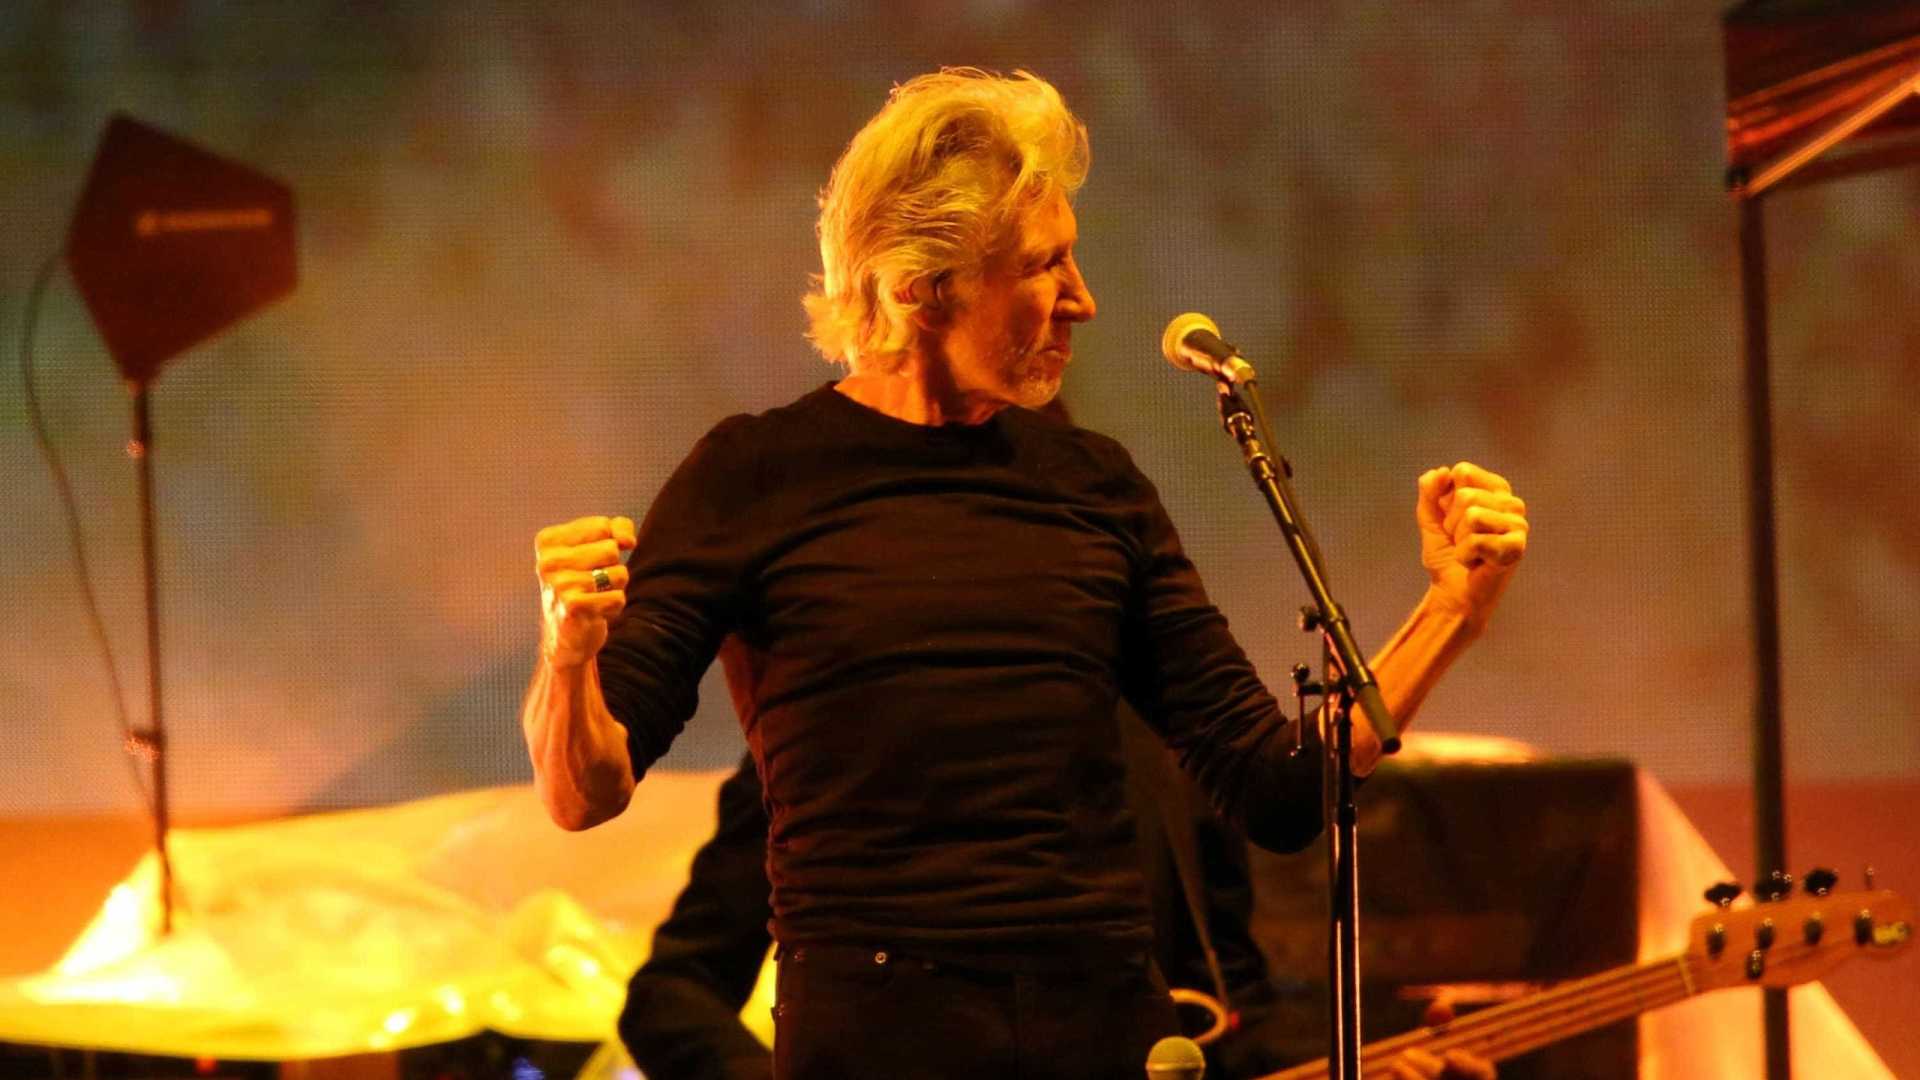 Show de Roger Waters em Brasília gera briga entre ‘ele não’ e ‘ele sim’